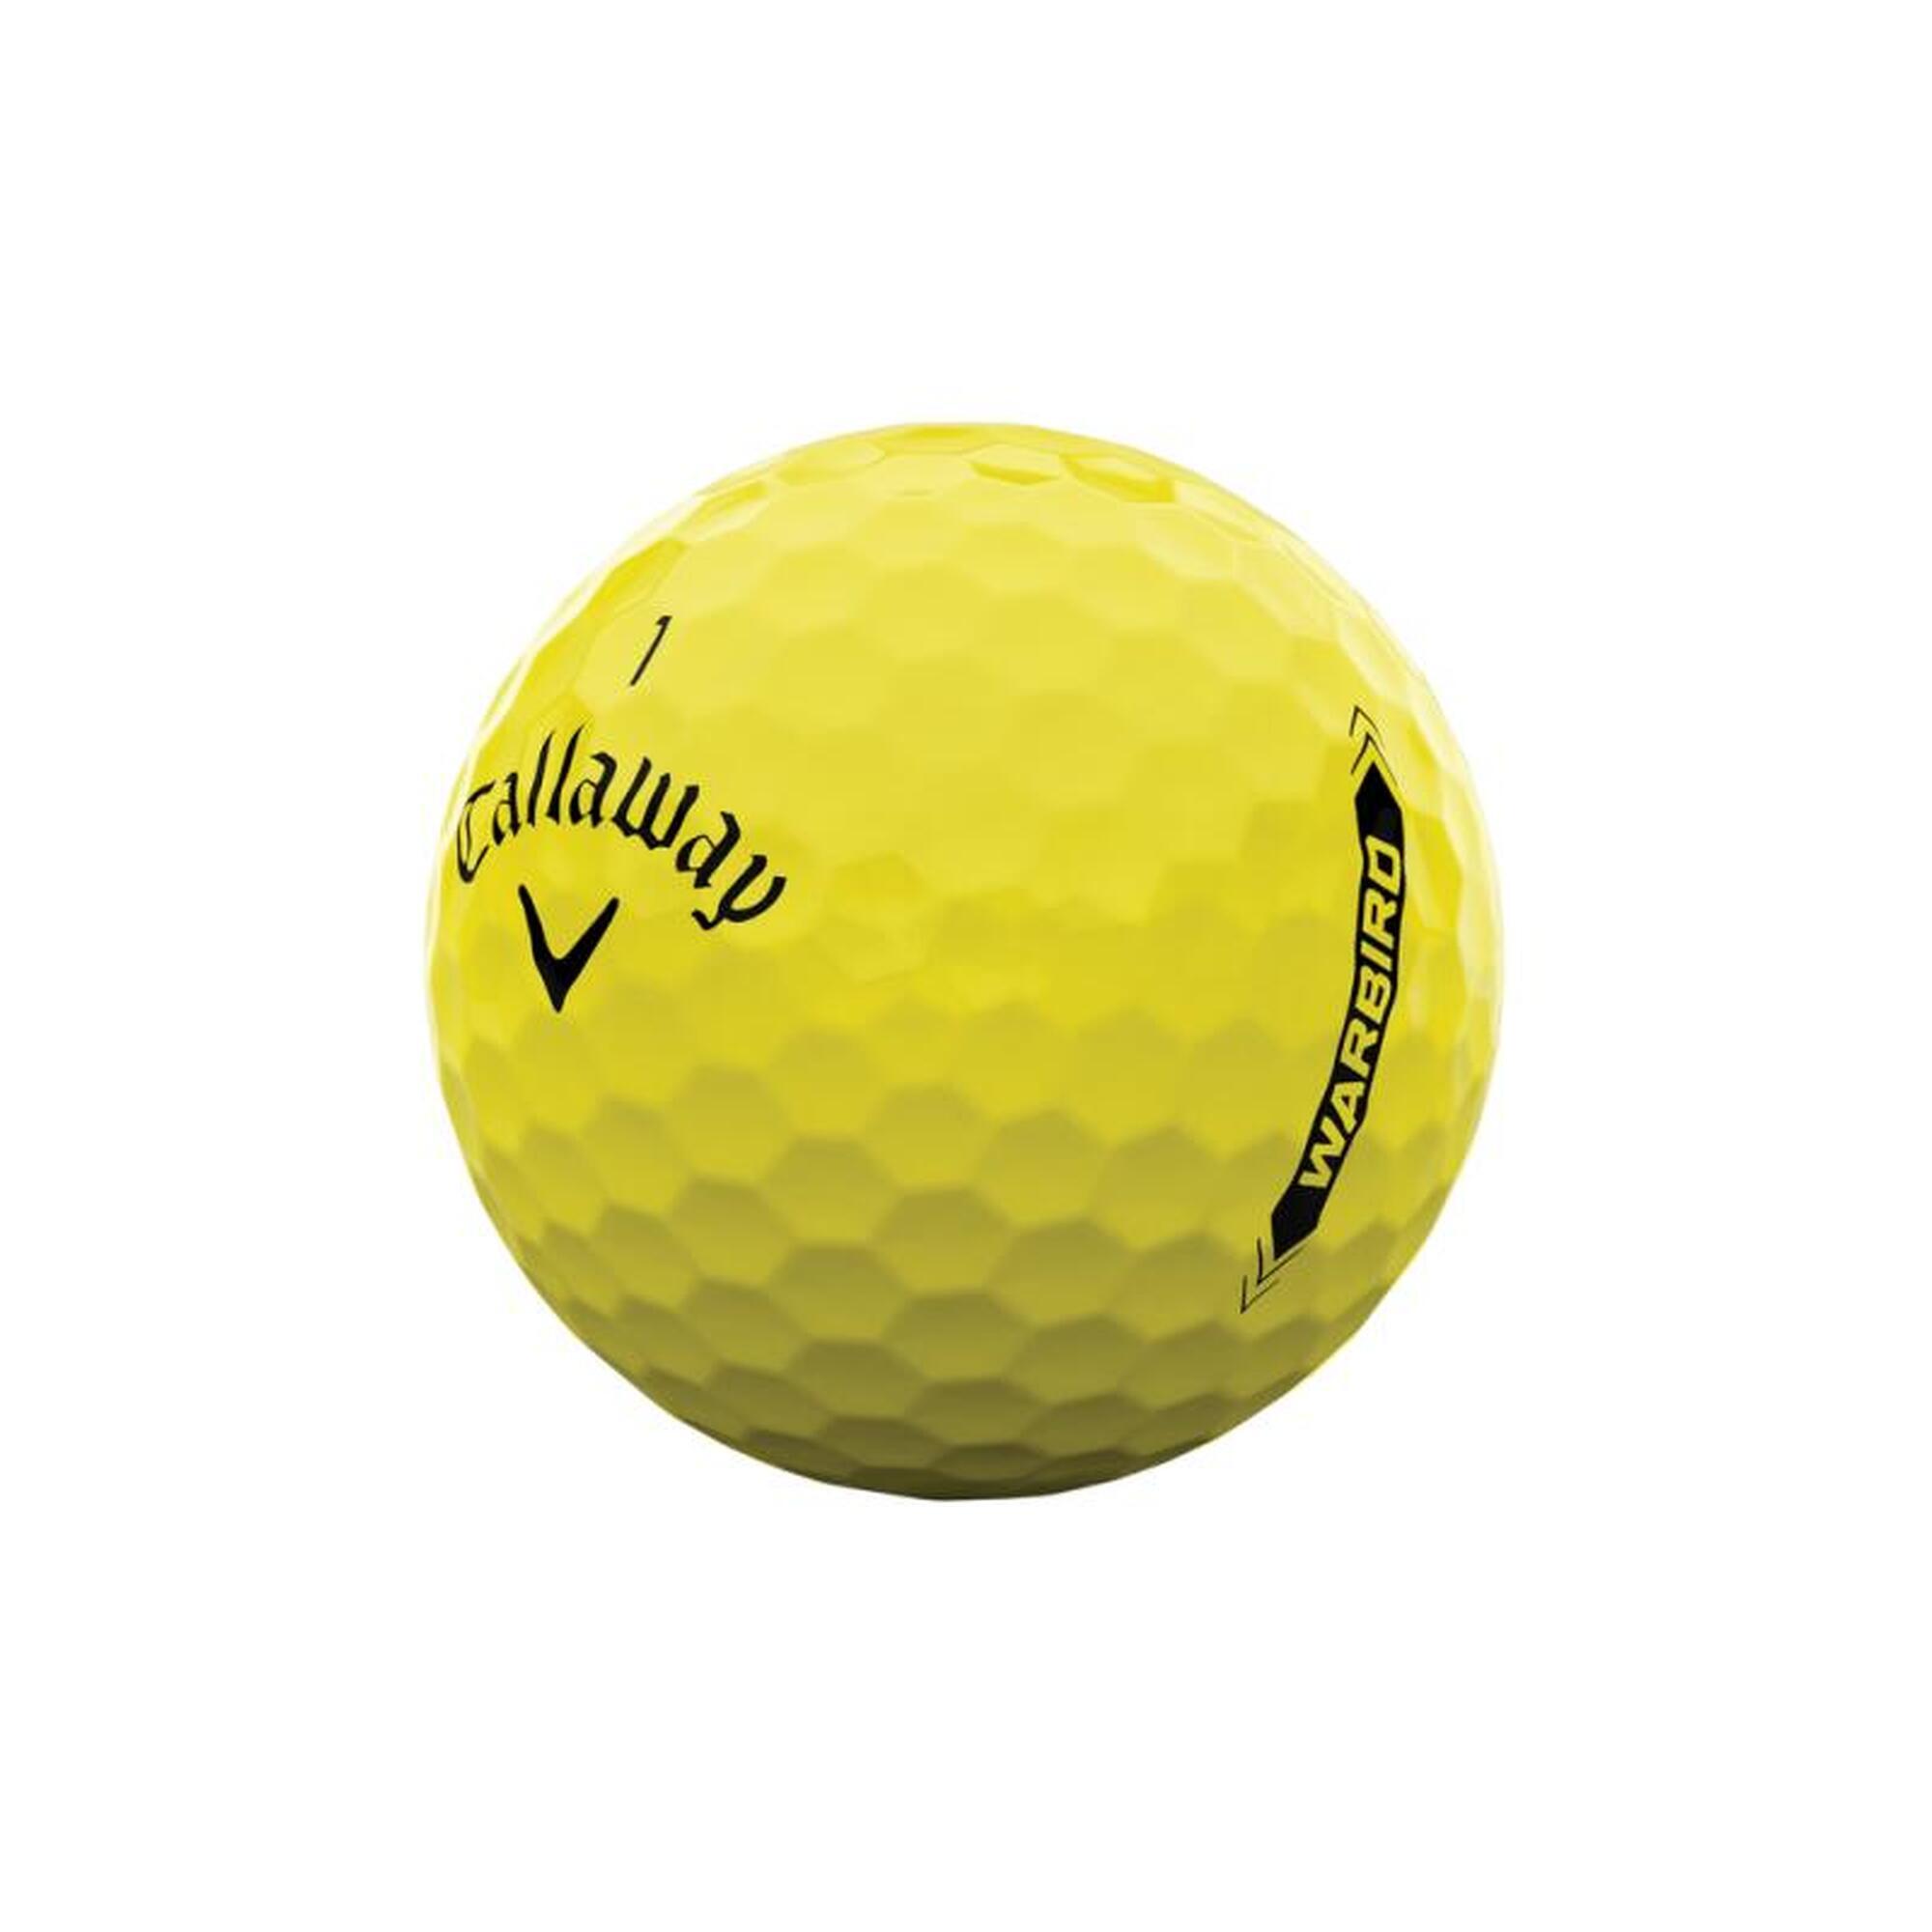 Bolas de Golf Callaway Warbird Amarillo